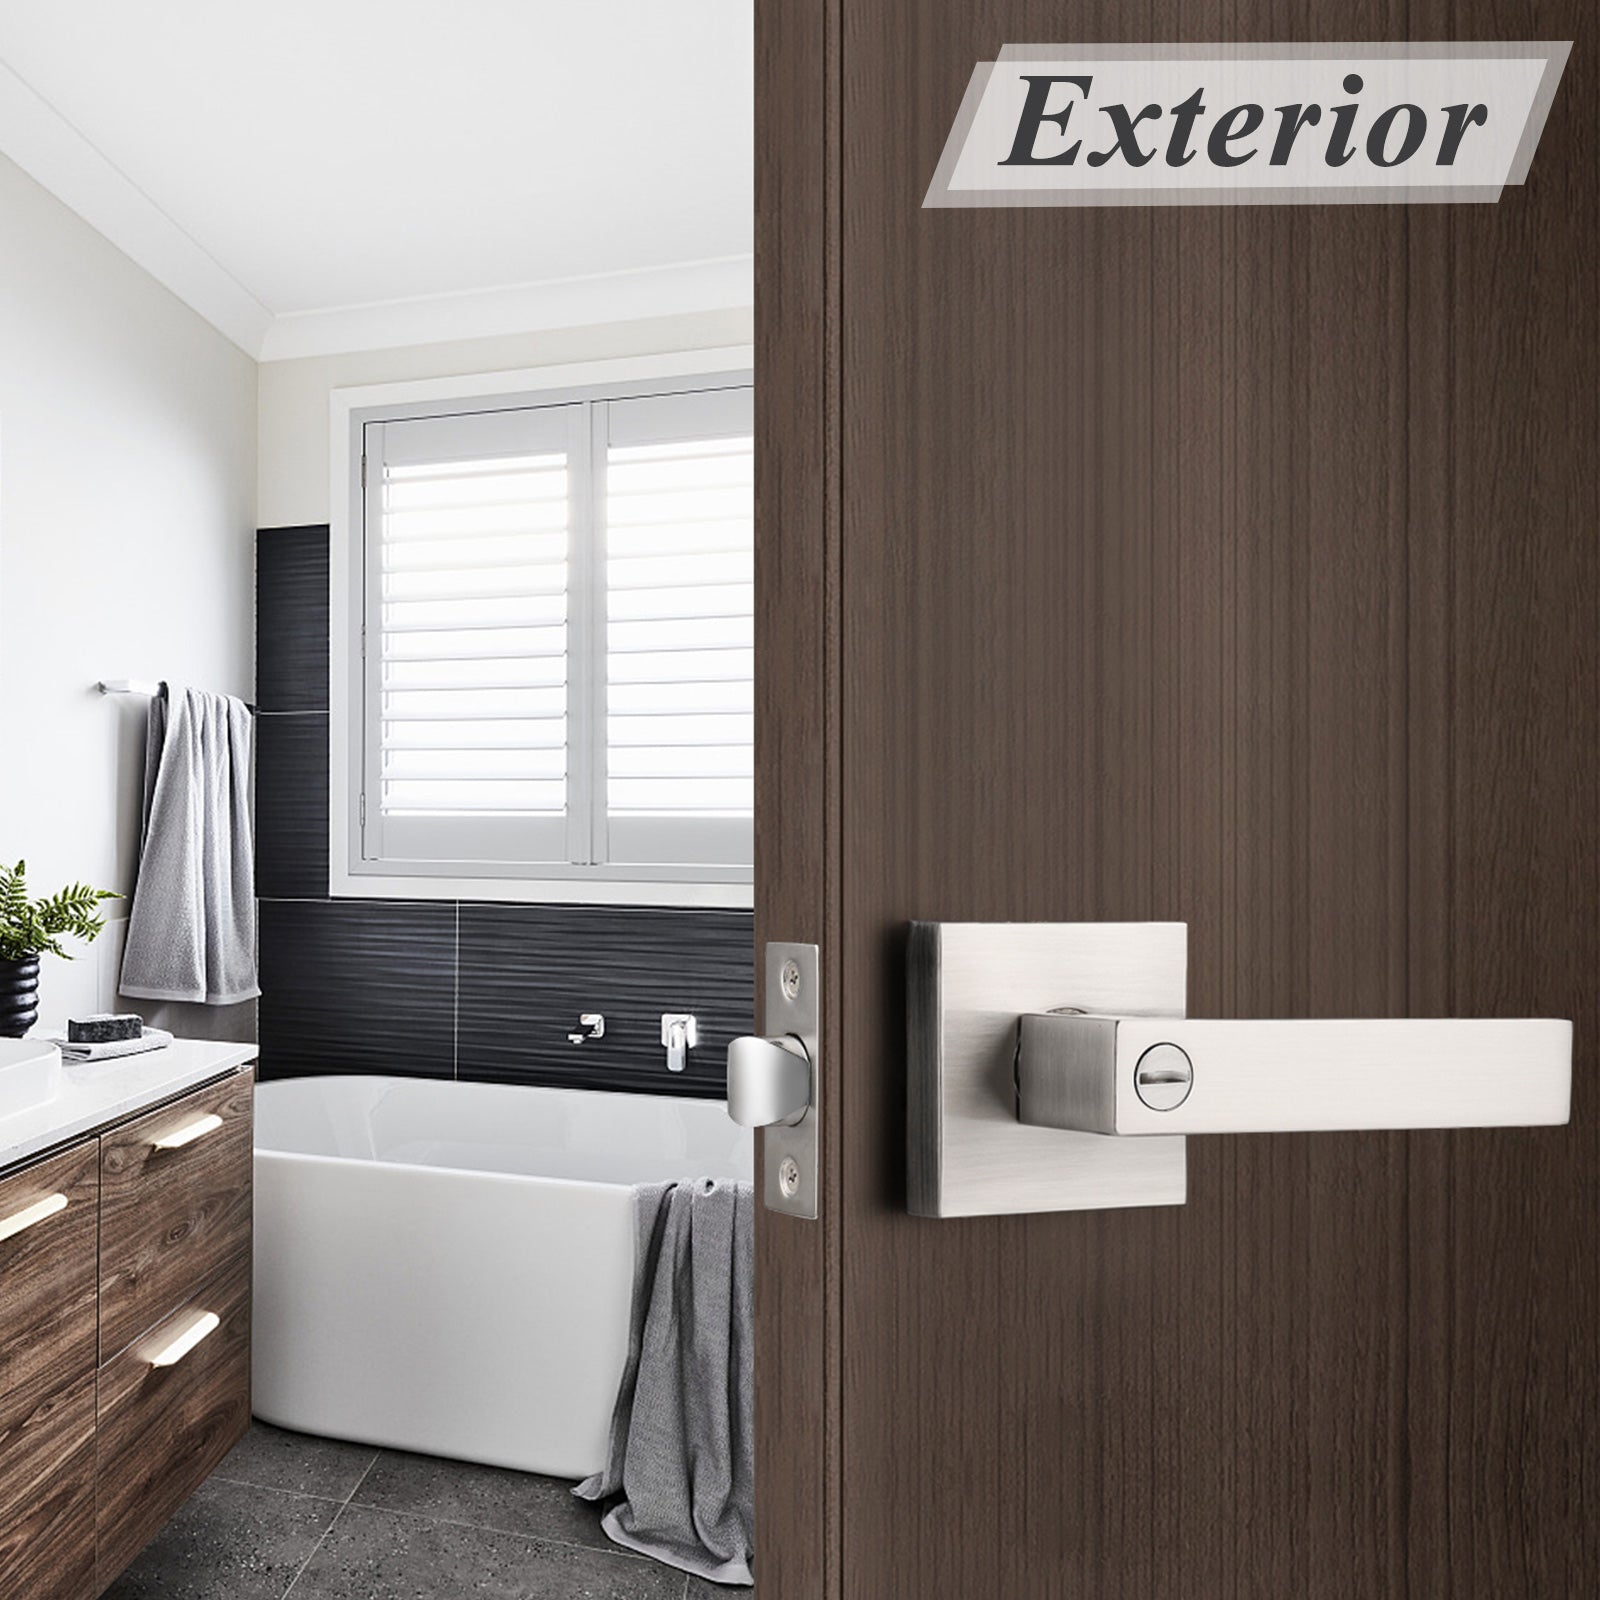 High Quality Heavy Duty Door Levers Satin Nickel Finish Privacy Door Handle Locks for Bedroom Bathroom DL01SNBK